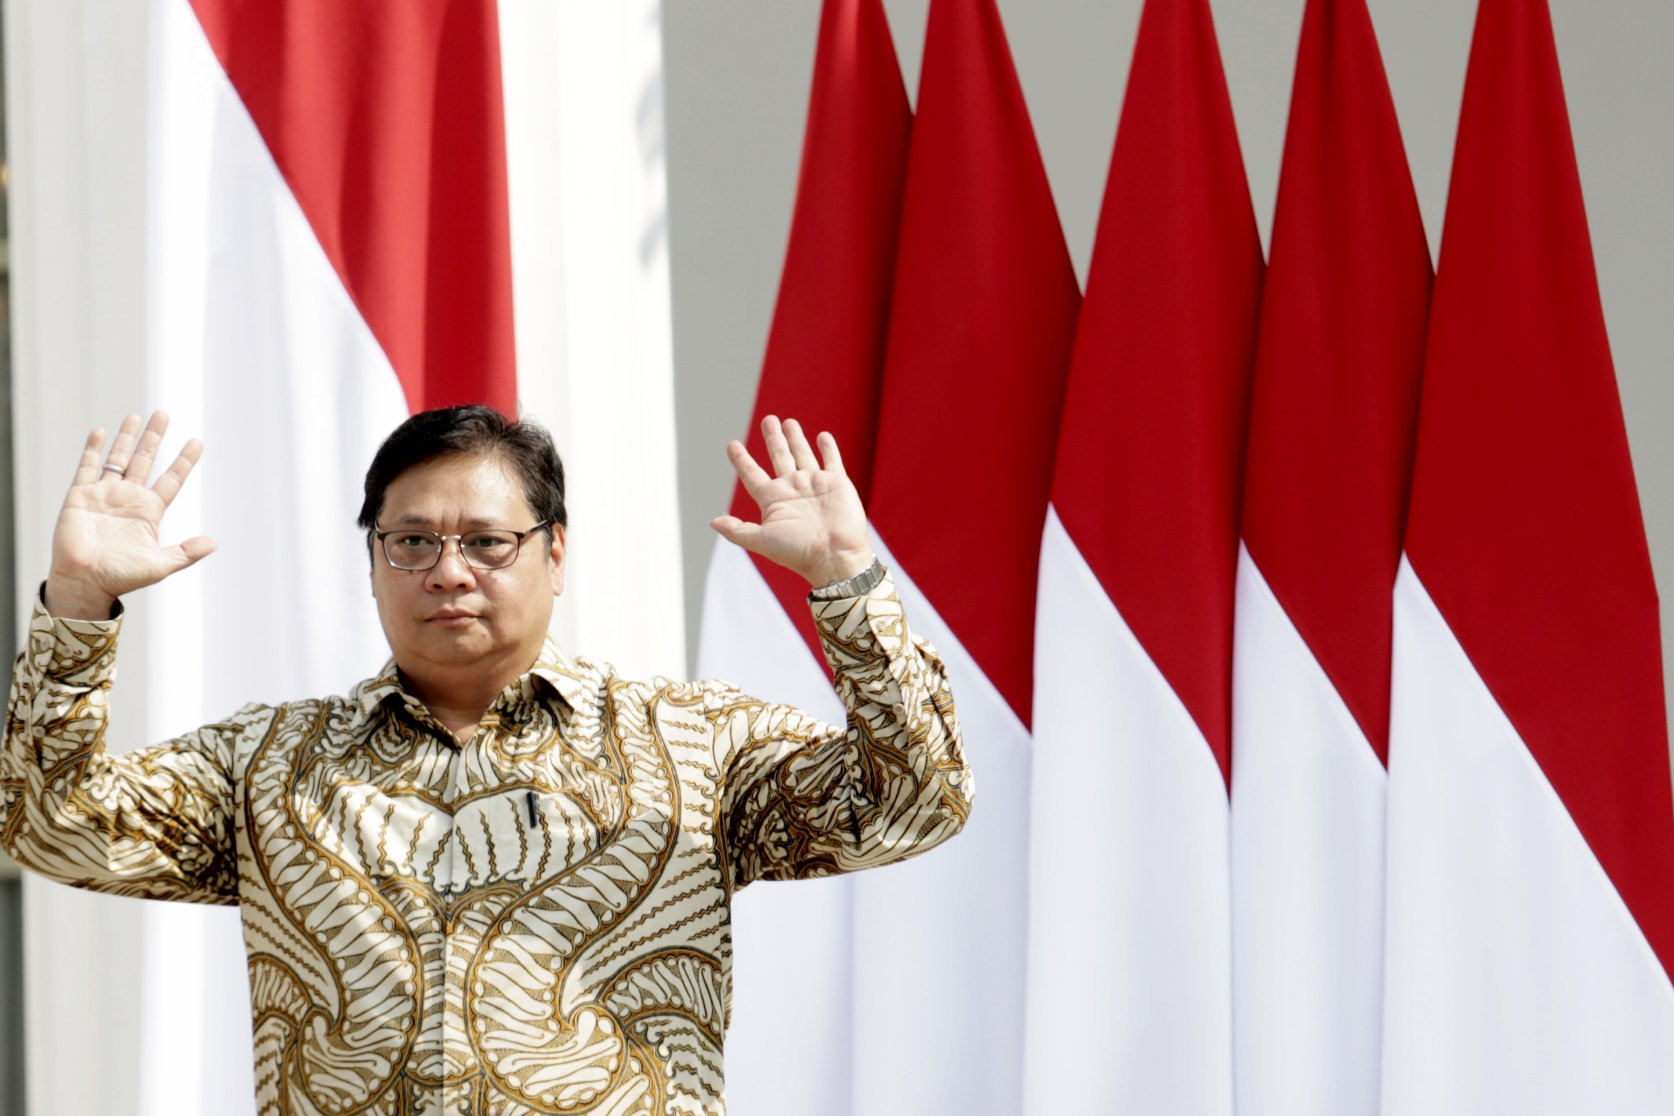 Menteri Koordinator Perekonomian Airlangga Hartarto. Hari ini Presiden Joko Widodo mengumumkan para menteri dan pejabat setingkat menteri periode 2019 - 2024.